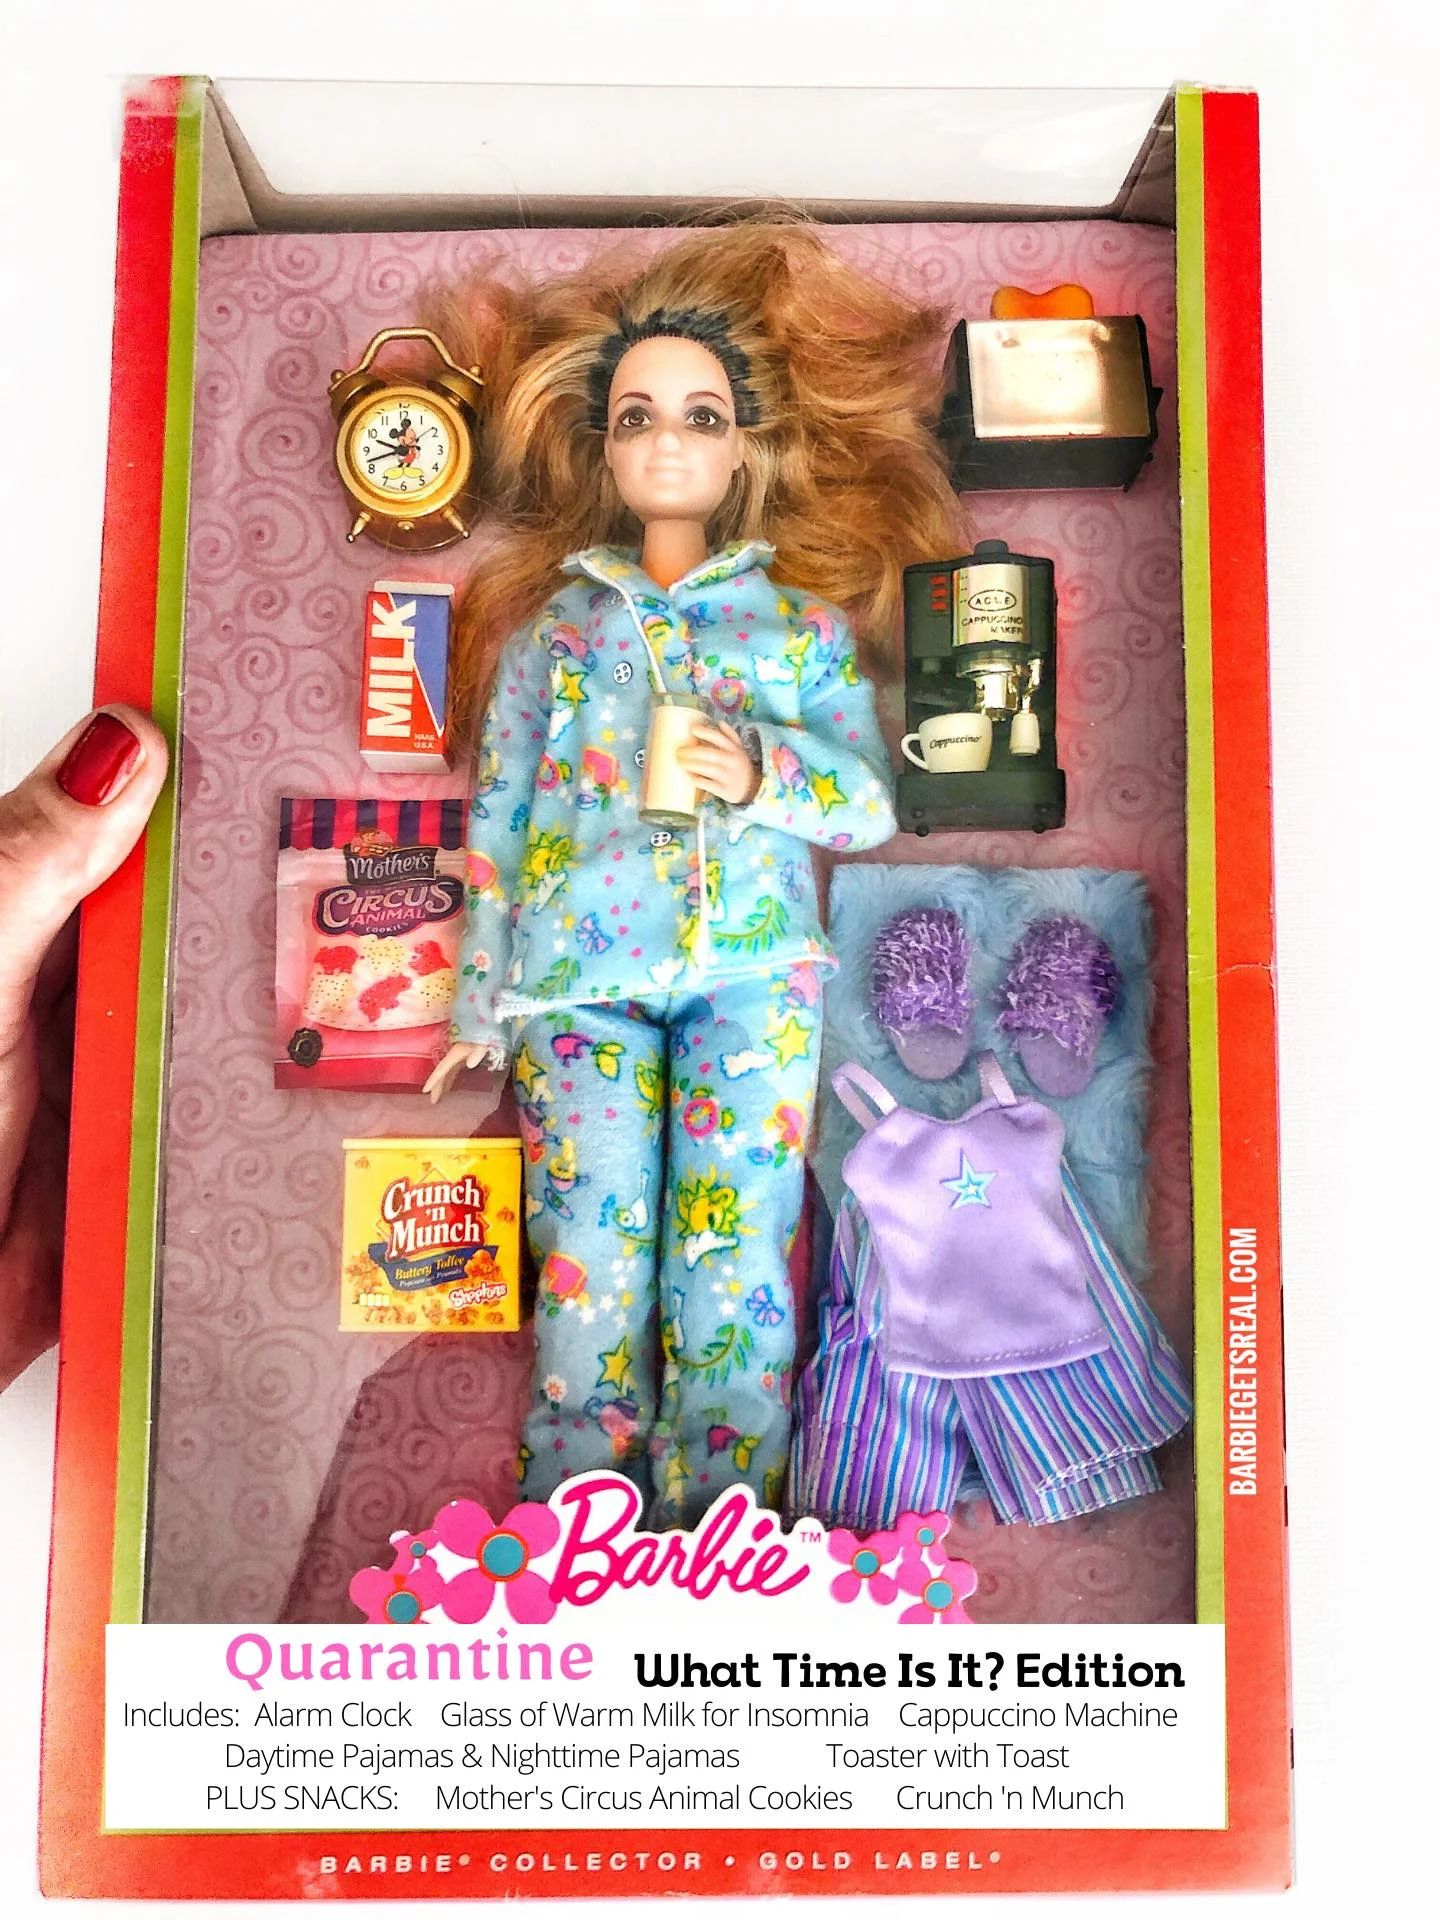 Женщина создала реалистичных кукол Барби, сидящих на карантине – такими их еще не видели - фото 479756